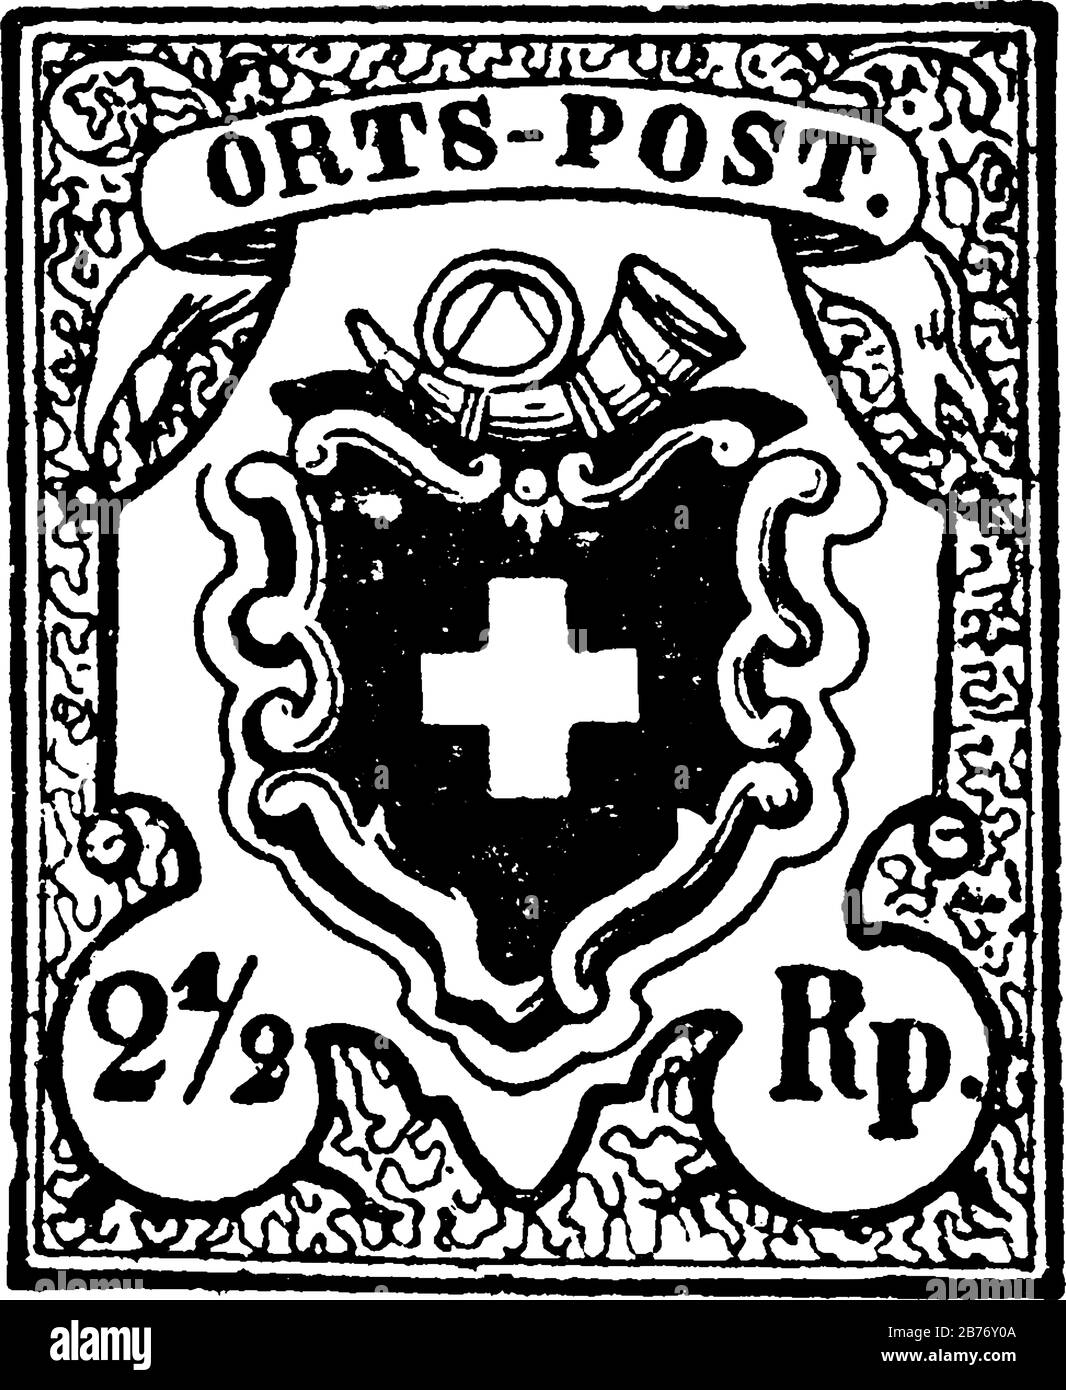 Schweizerstempel (2-1/2 Rappen) aus dem Jahr 1850, ein kleines Klebepapier, das an etwas feststeckt, um einen gezahlten Geldbetrag zu zeigen, hauptsächlich eine Briefmarke Stock Vektor